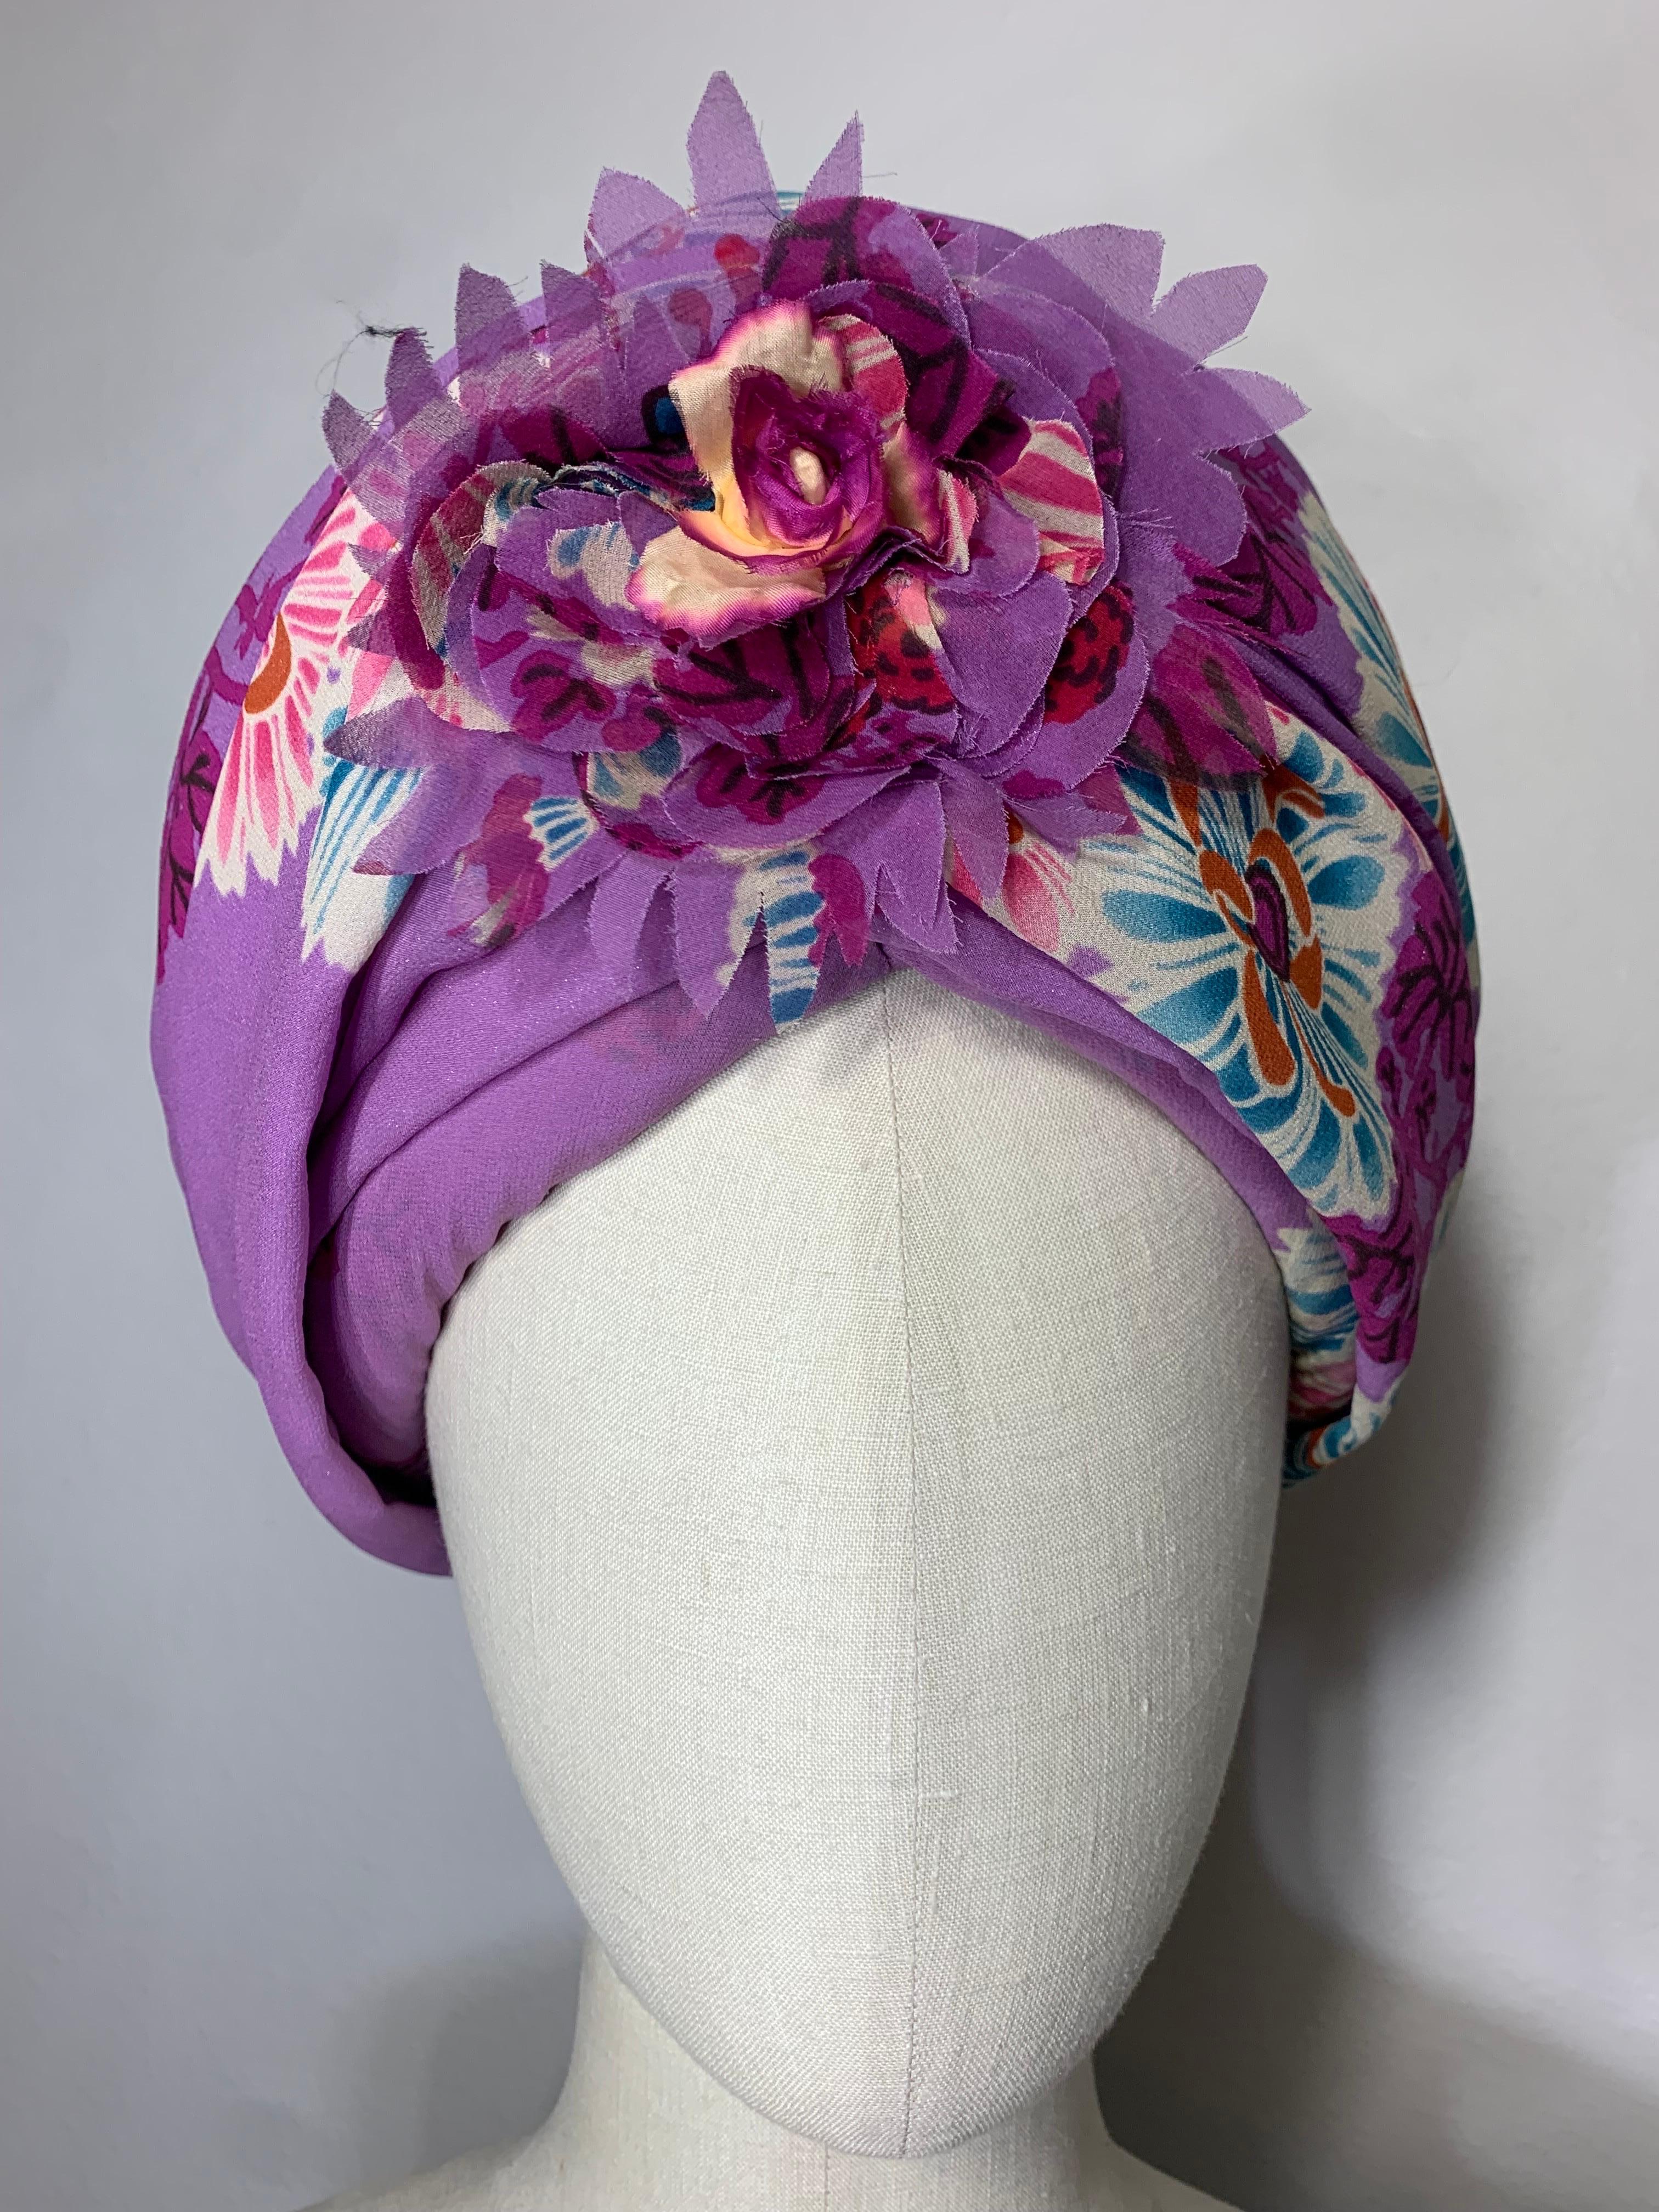 Turban imprimé floral en mousseline de soie rose orchidée avec centre floral et épingle à chapeau assortie : ce turban printemps/été a une haute silhouette en forme de ruche construite sur une base raidie en lamé argenté pour plus de hauteur et de